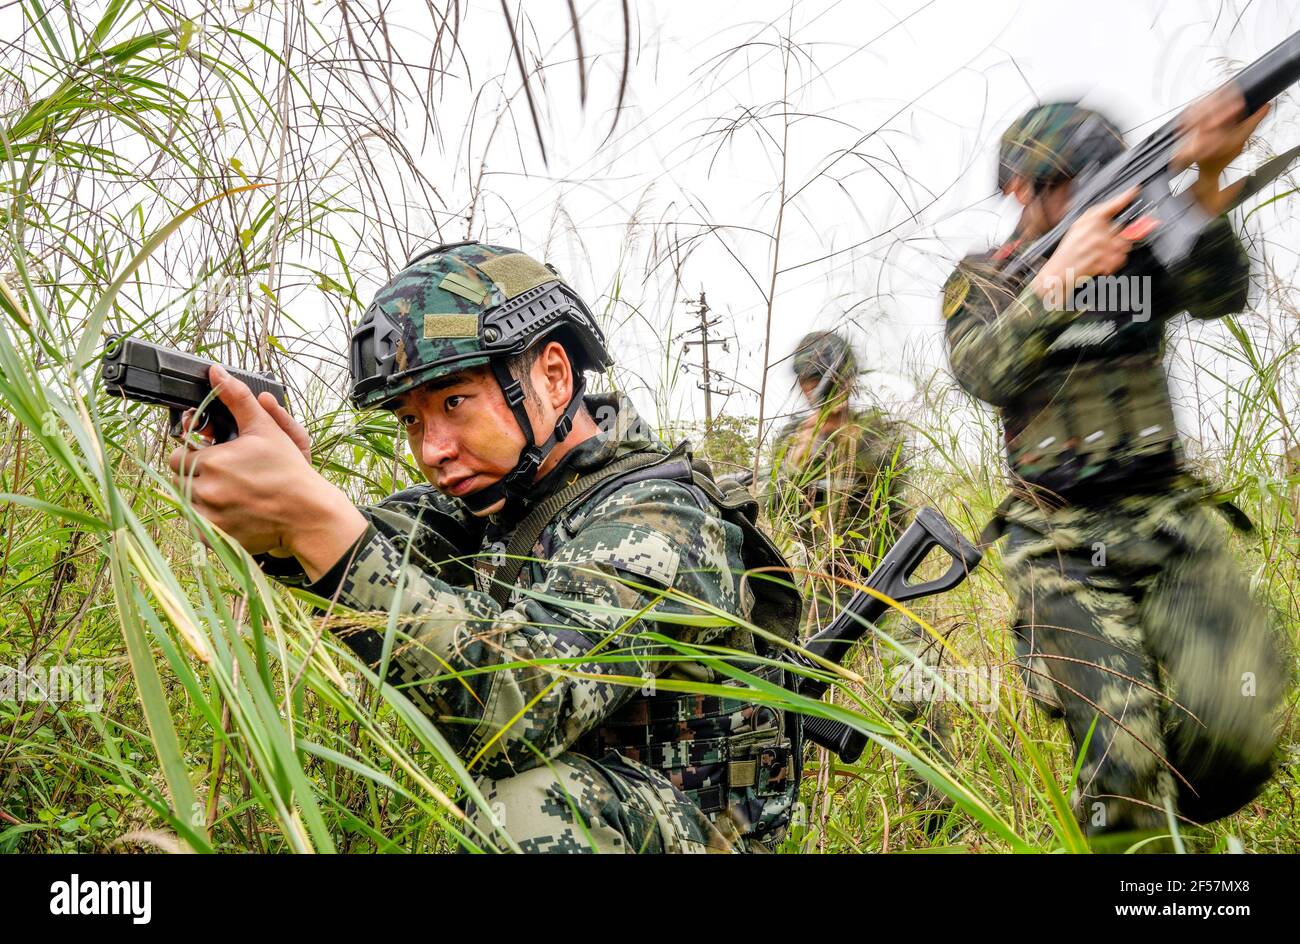 QINZHOU, CHINA - 24 DE MARZO de 2021 - un campo de entrenamiento antiterrorista de la policía armada en Qinzhou, Región Autónoma de Guangxi Zhuang, China, 24 de marzo de 2021. (Foto de Chai Hao / Costfoto/Sipa USA) crédito: SIPA USA/Alamy Live News Foto de stock